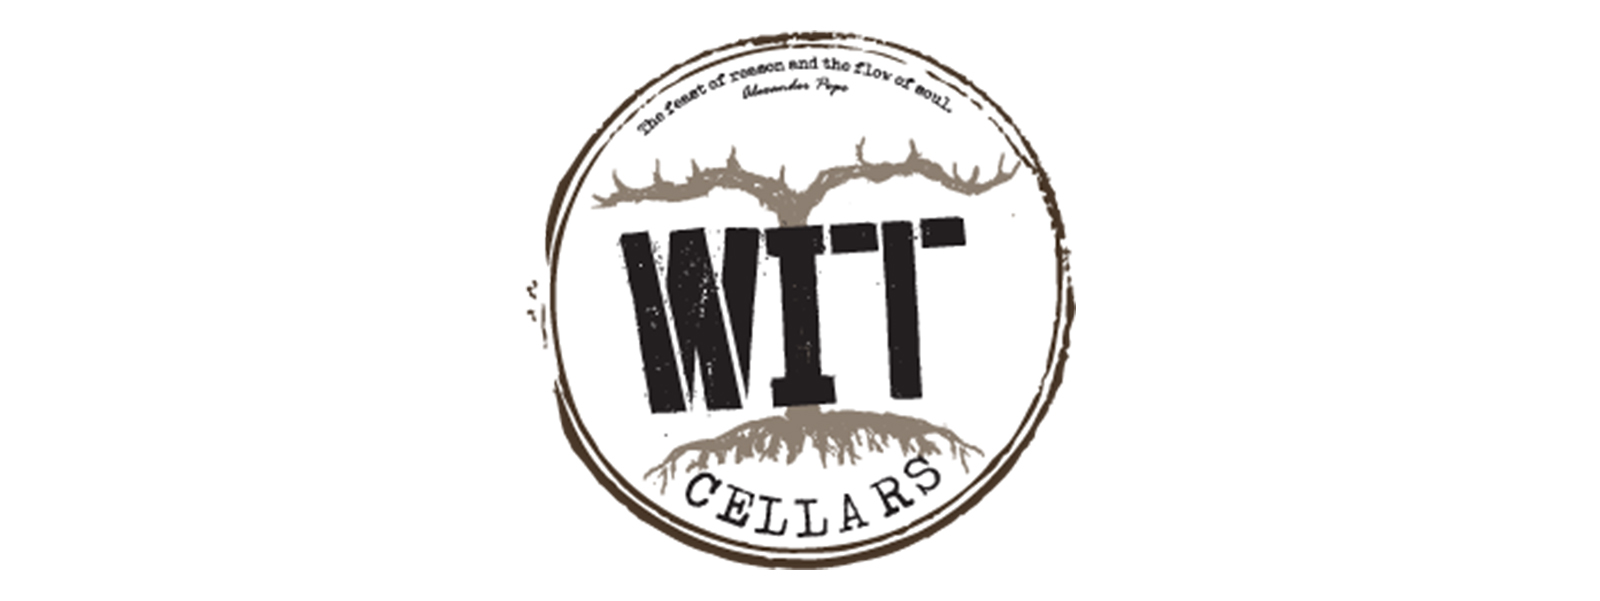 logos-Wit Cellars